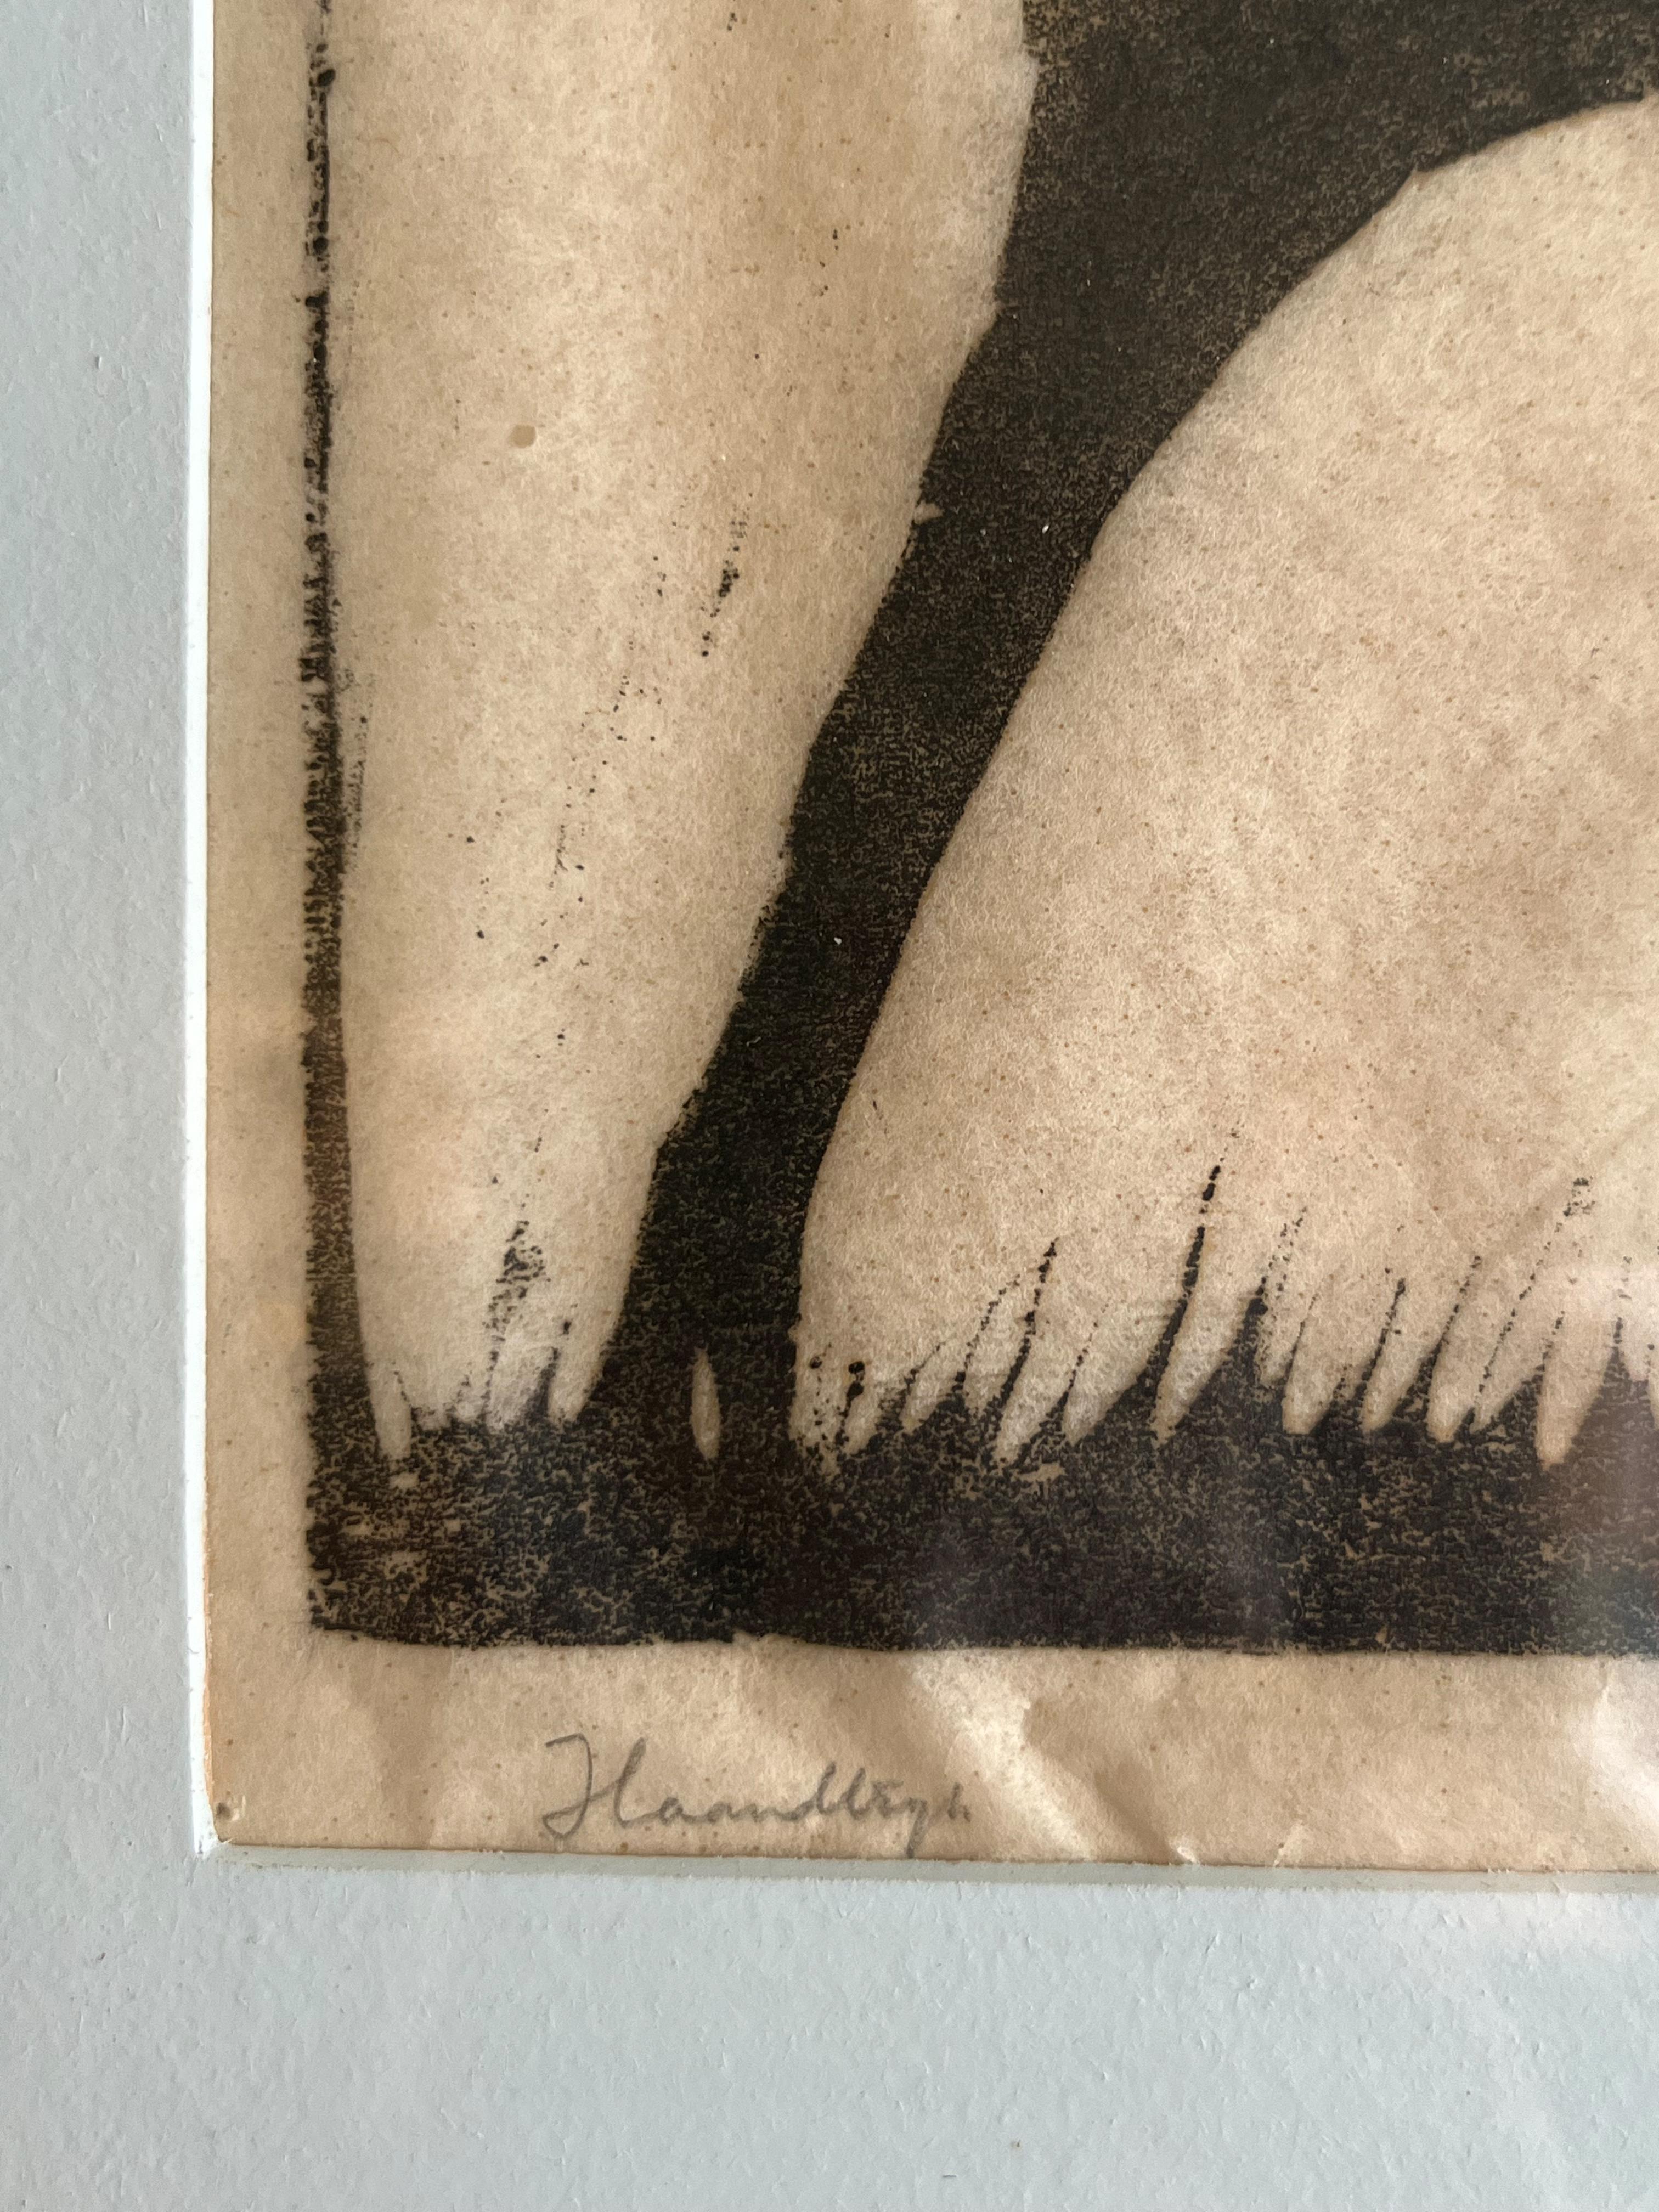 Axel Salto : Un cerf. Signé Salto. Gravure sur bois. 22×27 cm.

Axel Salto (1889-1961) était un peintre, graphiste, illustrateur et céramiste danois.

Formé à l'Académie des arts de Copenhague, Axel Salto a commencé sa carrière professionnelle par